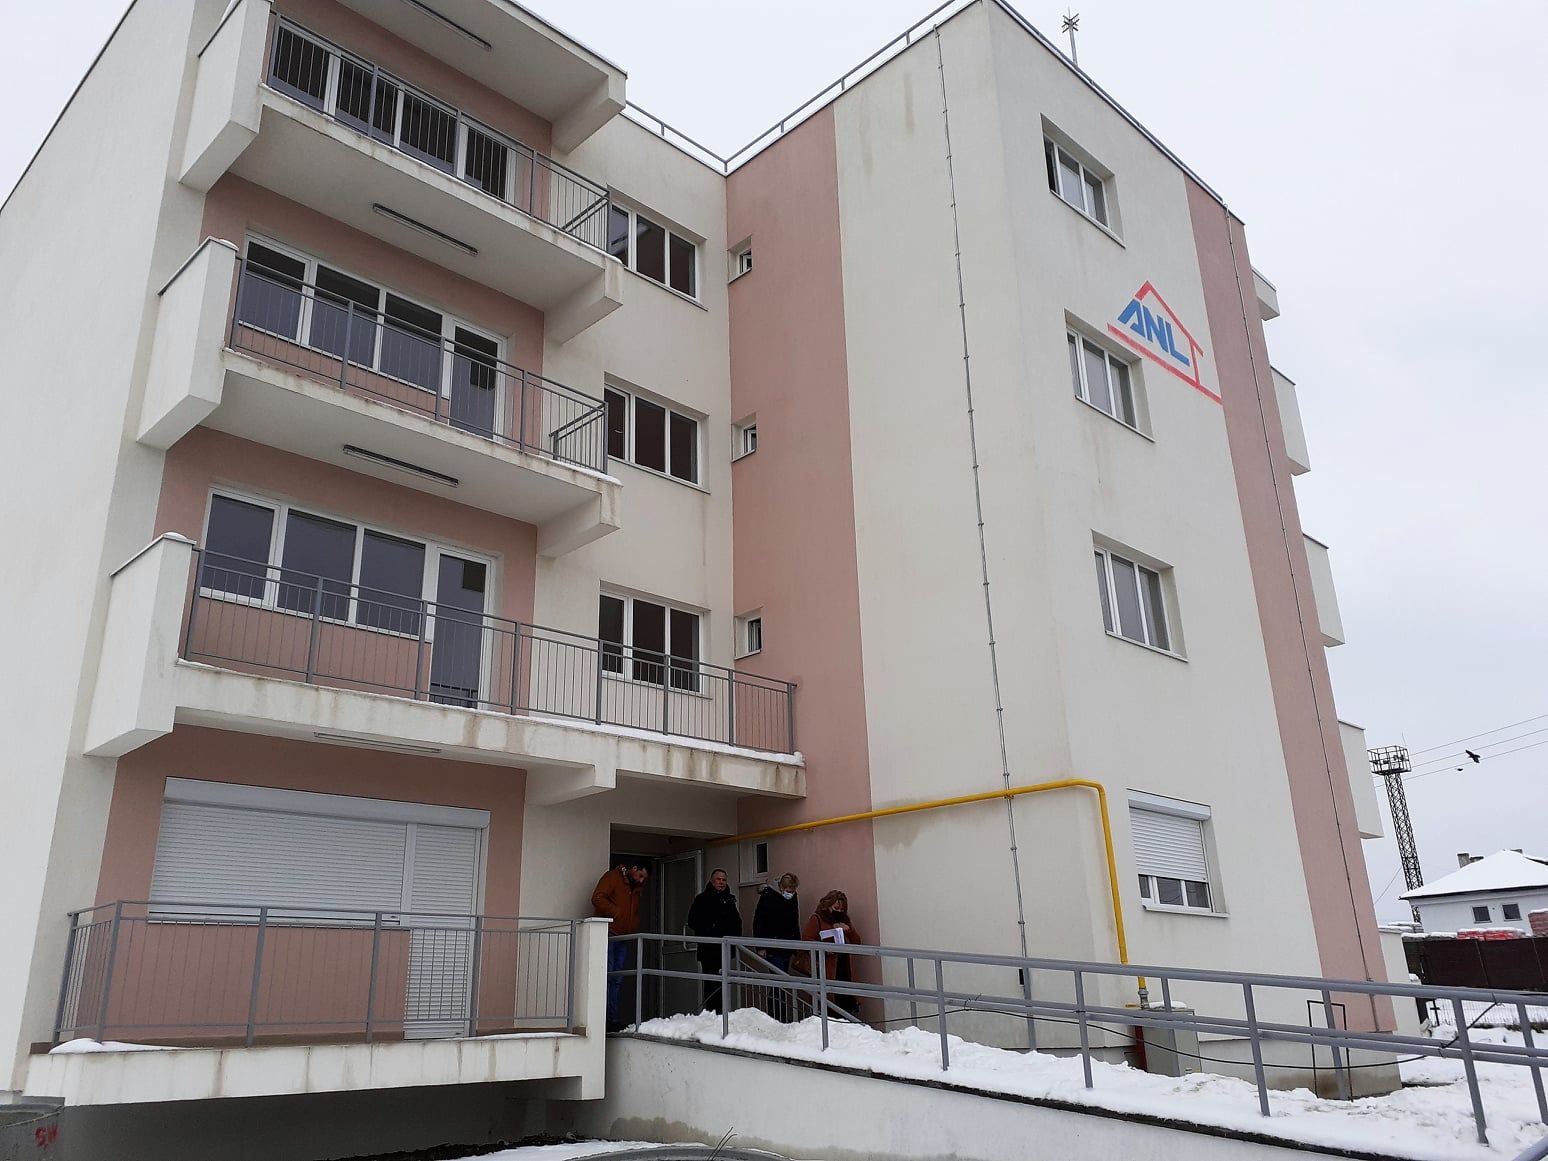 Bloc cu 20 de apartamente construit pentru medici la Botoșani